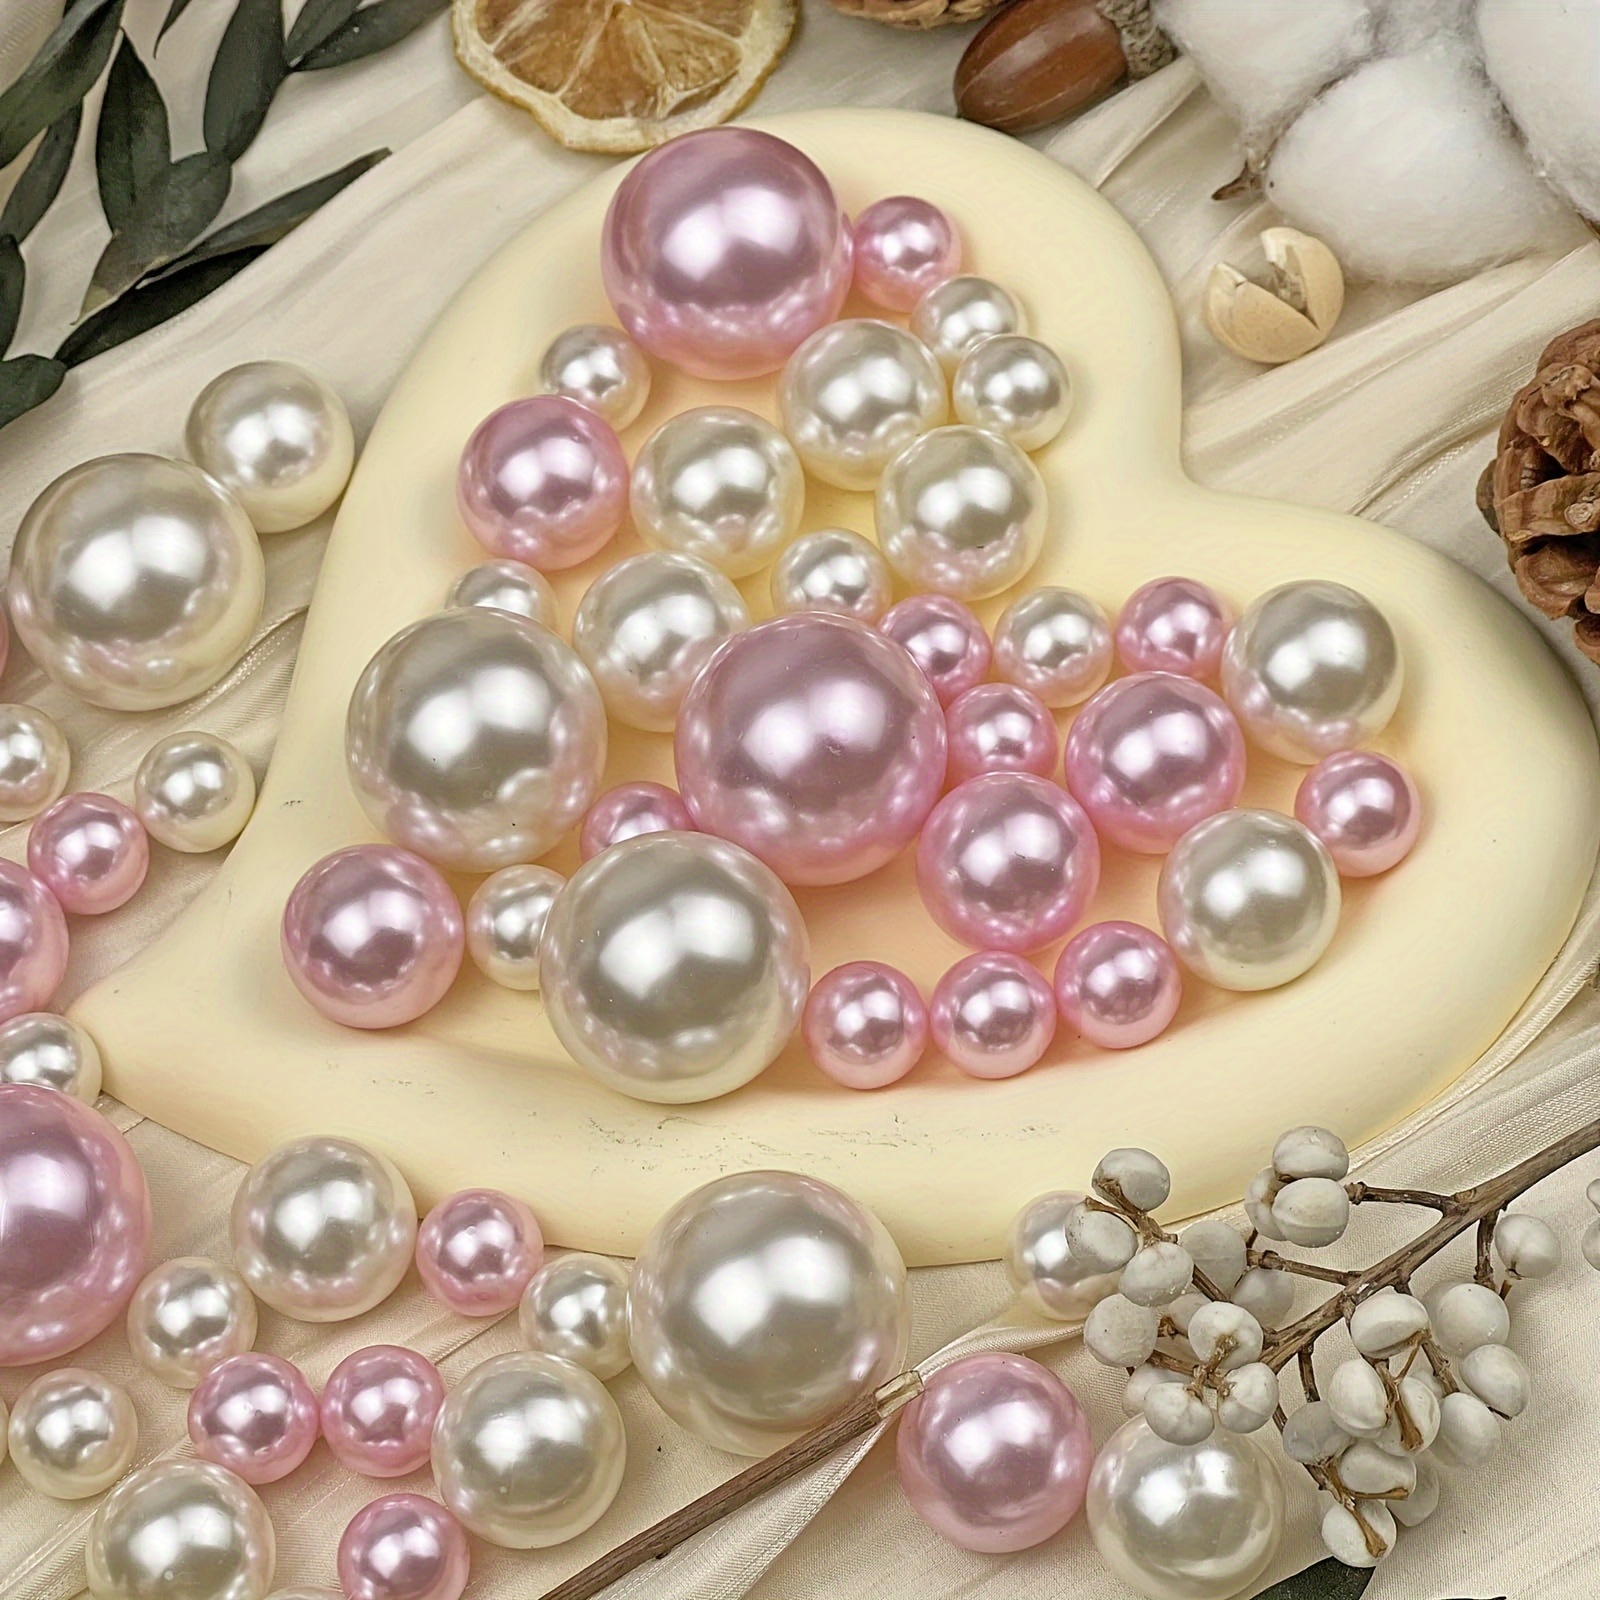 Faux Perle, 150 Perles Flottantes Perles pour Remplissage de Vase